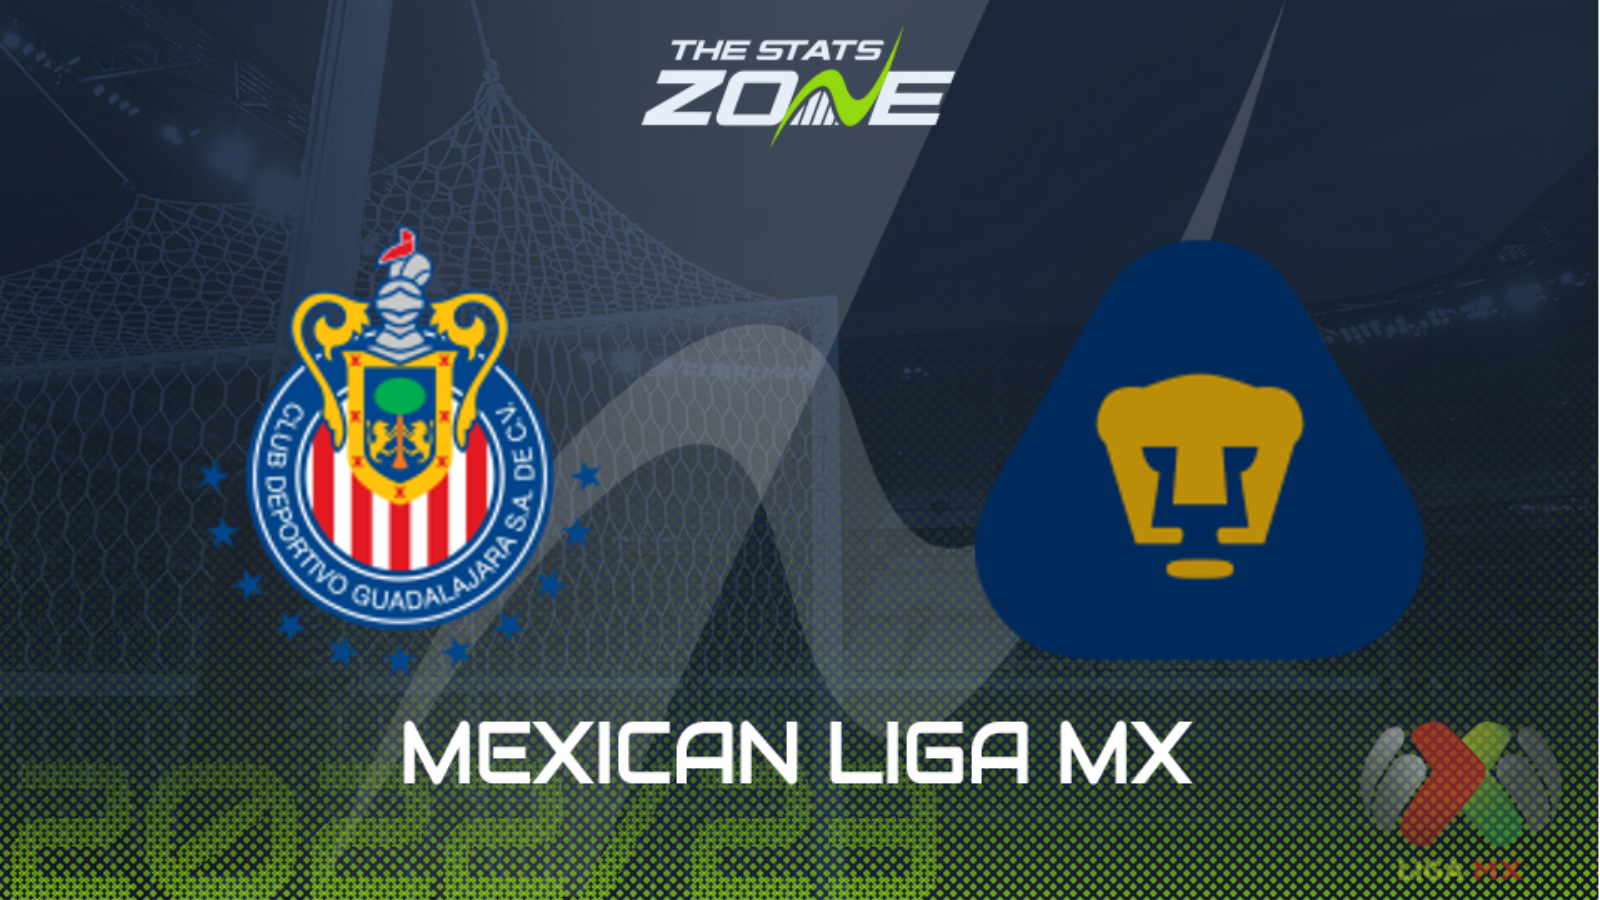 Guadalajara vs Pumas UNAM – Apertura – & | 2022-23 Mexican Liga MX - The Stats Zone